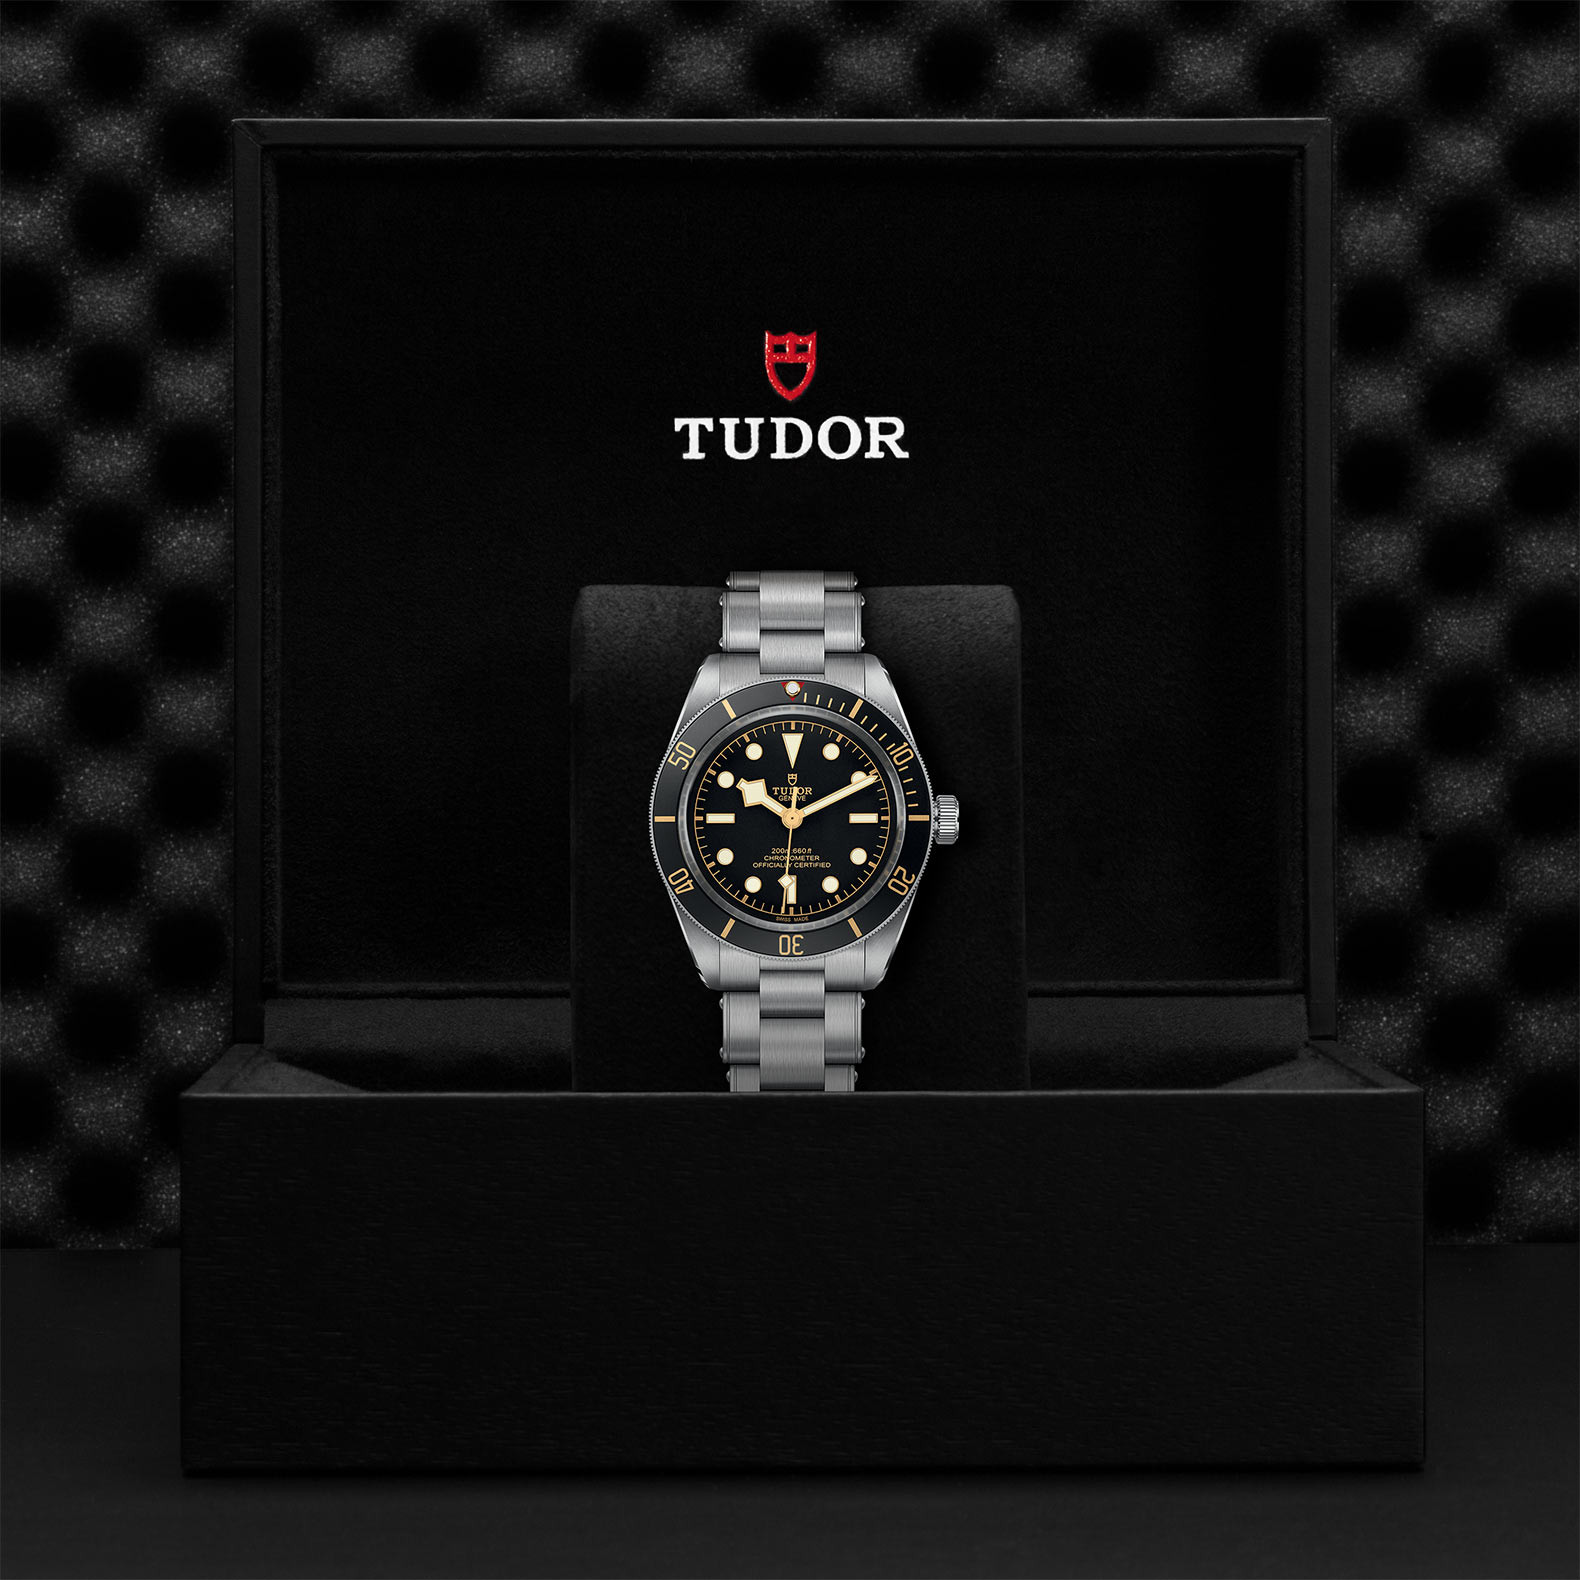 TUDOR Black Bay Fifty-Eight Watch in Presentation Box